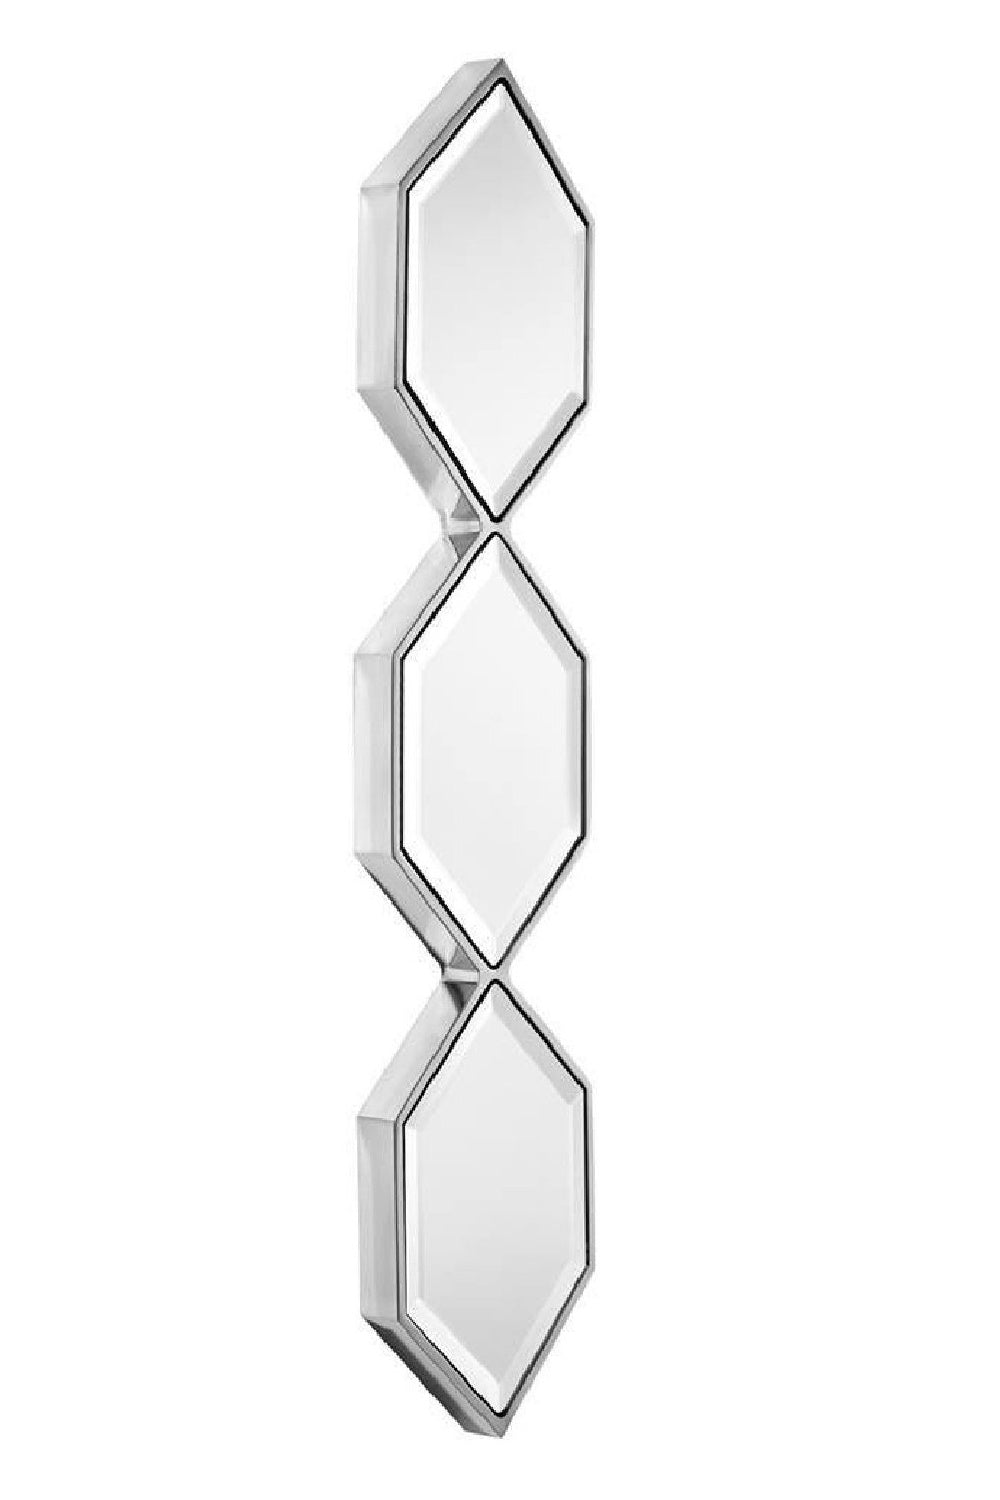 Silver Hexagonal Trio Mirror | Eichholtz Saronno | OROA